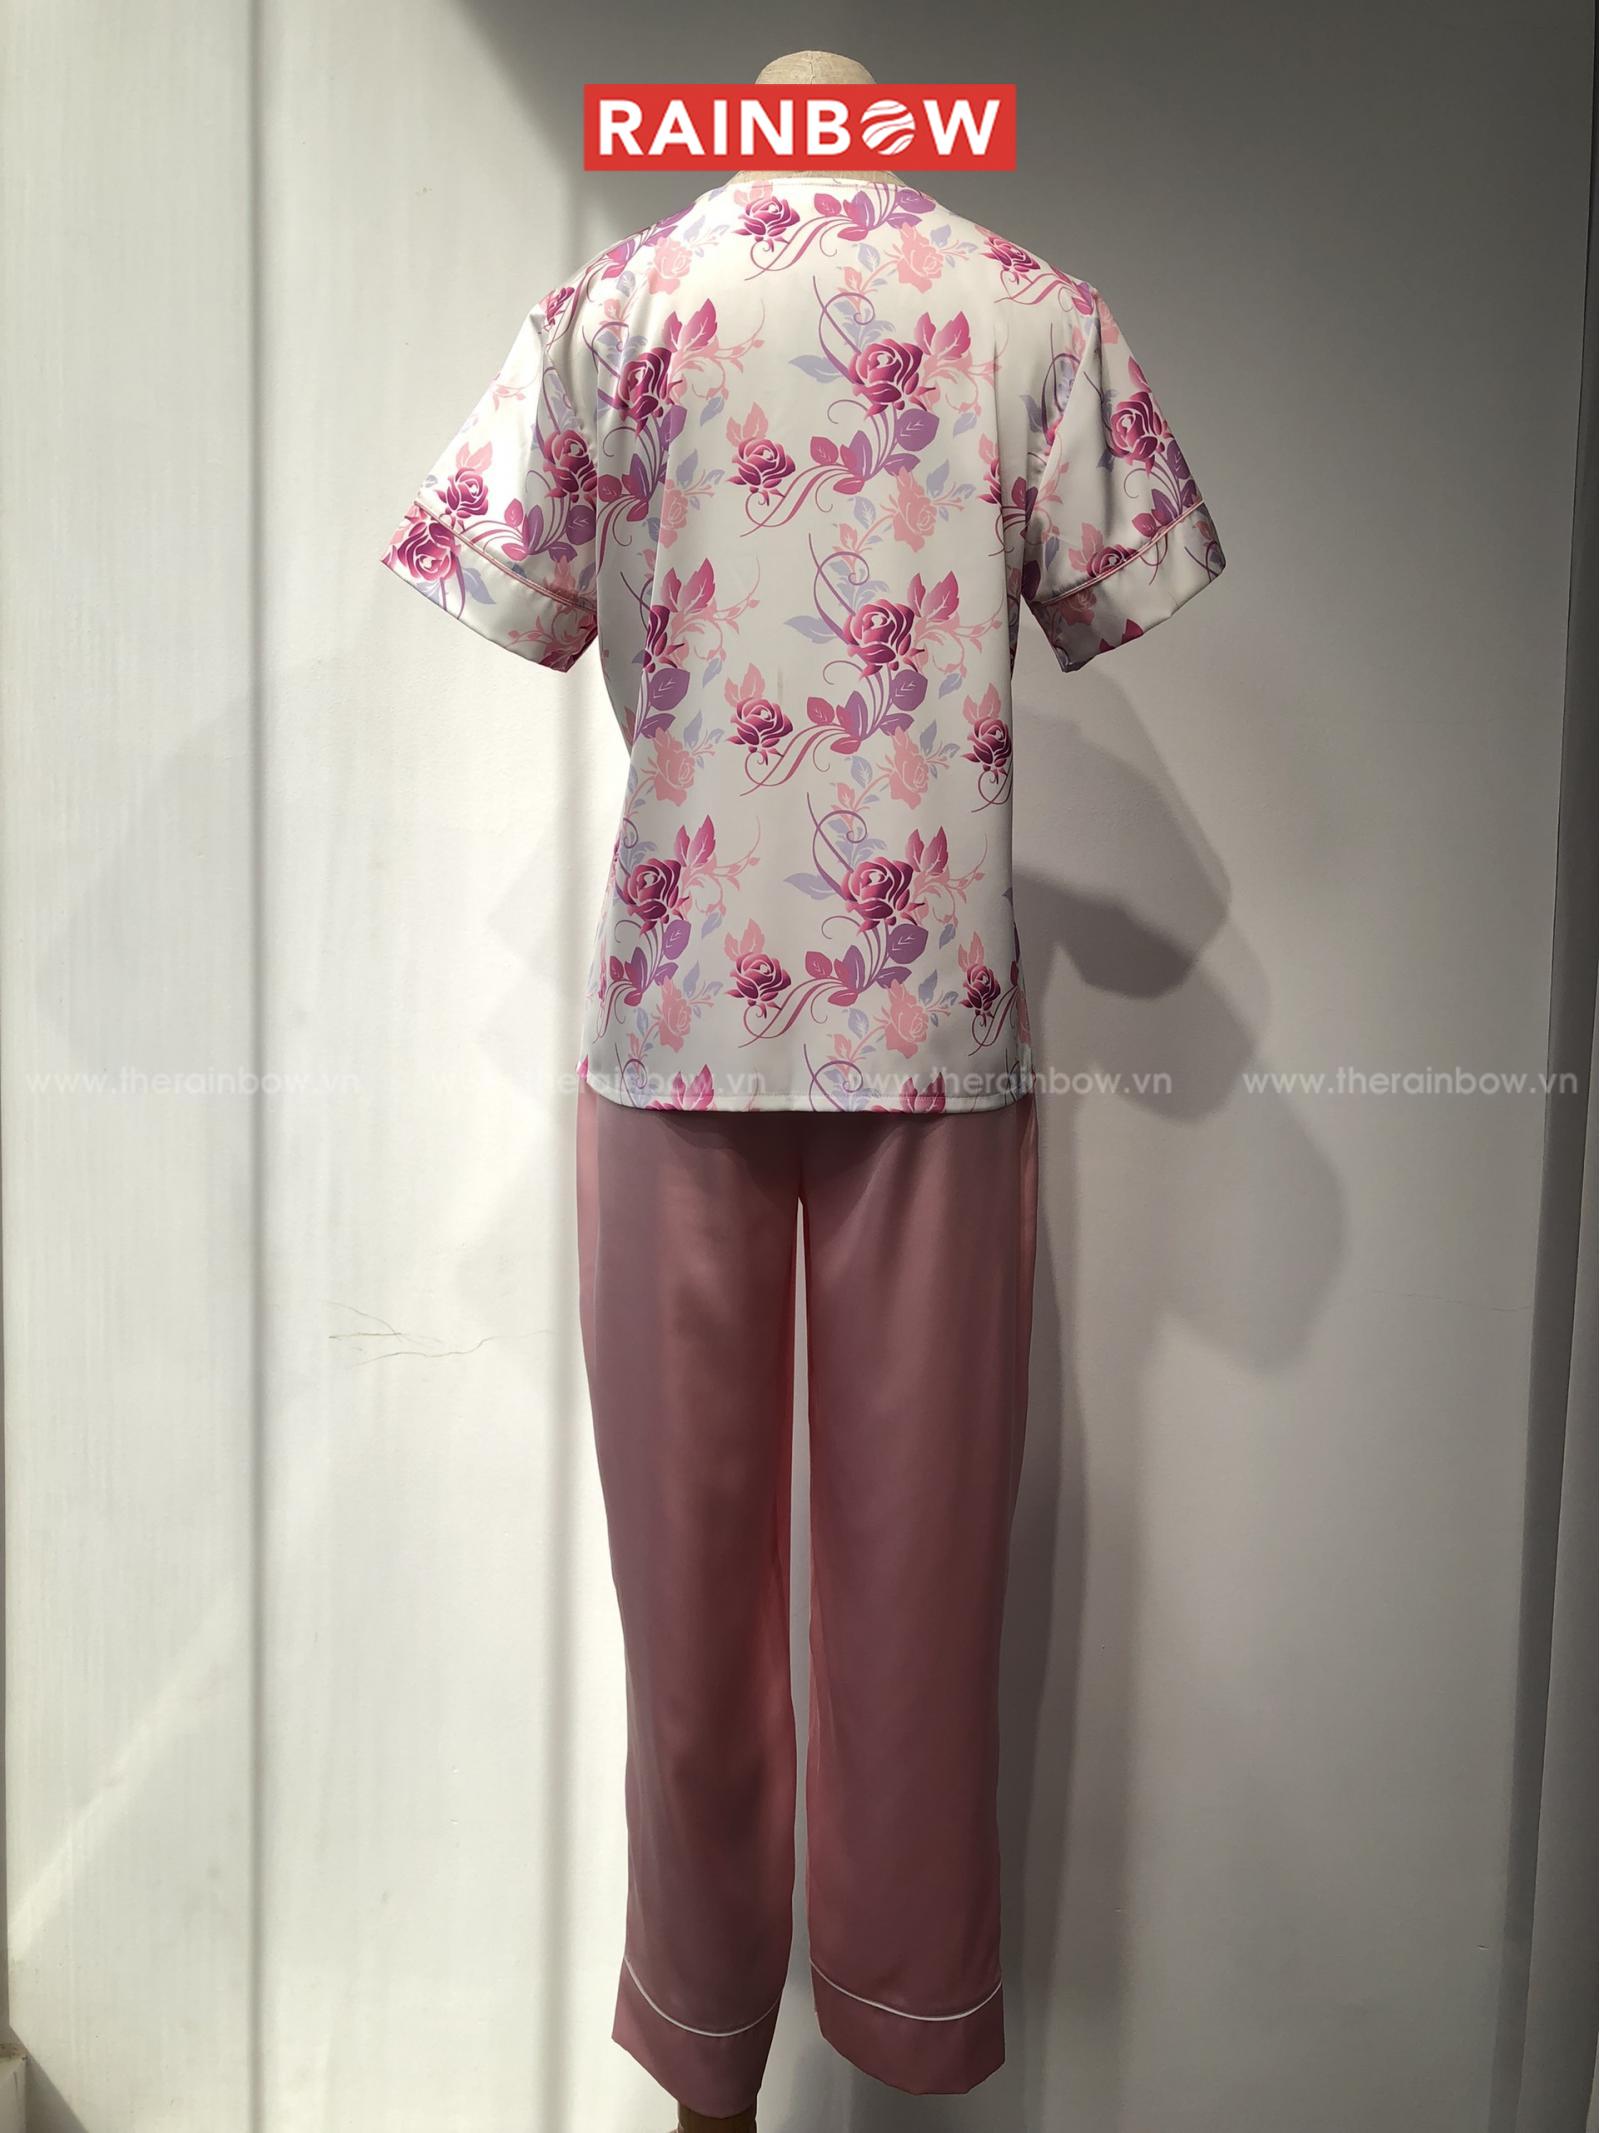 Pyjama tay ngắn + quần dài (phối màu hồng, tím)